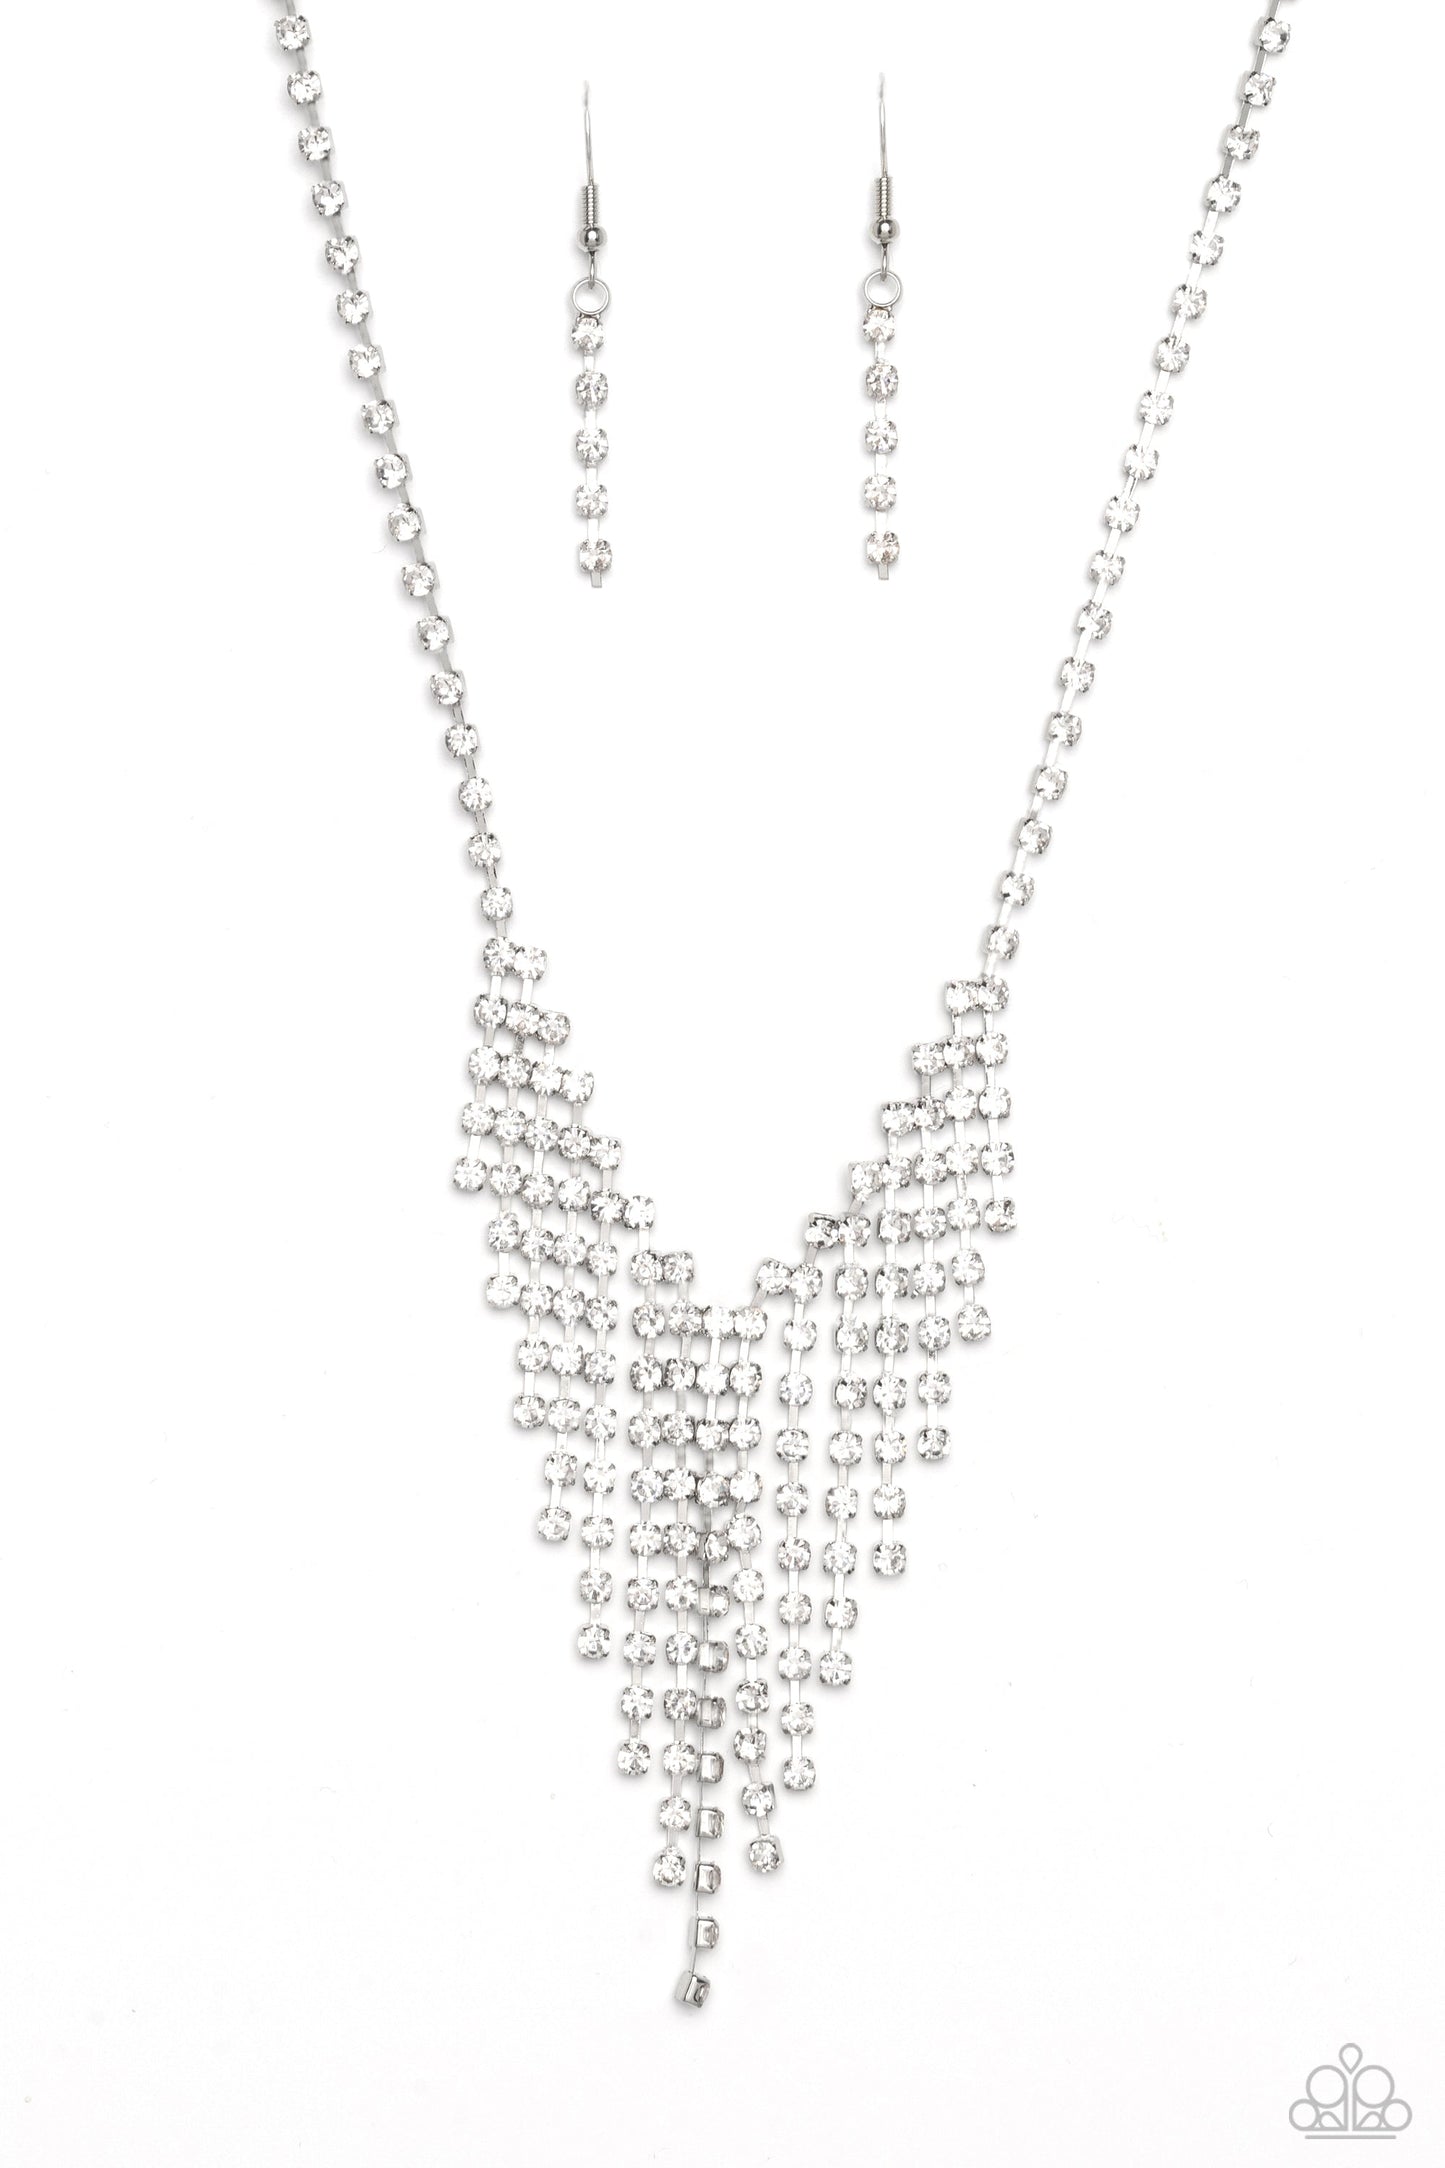 SHIMMER of Stars - White Rhinestone Fringe Paparazzi Necklace & matching earrings